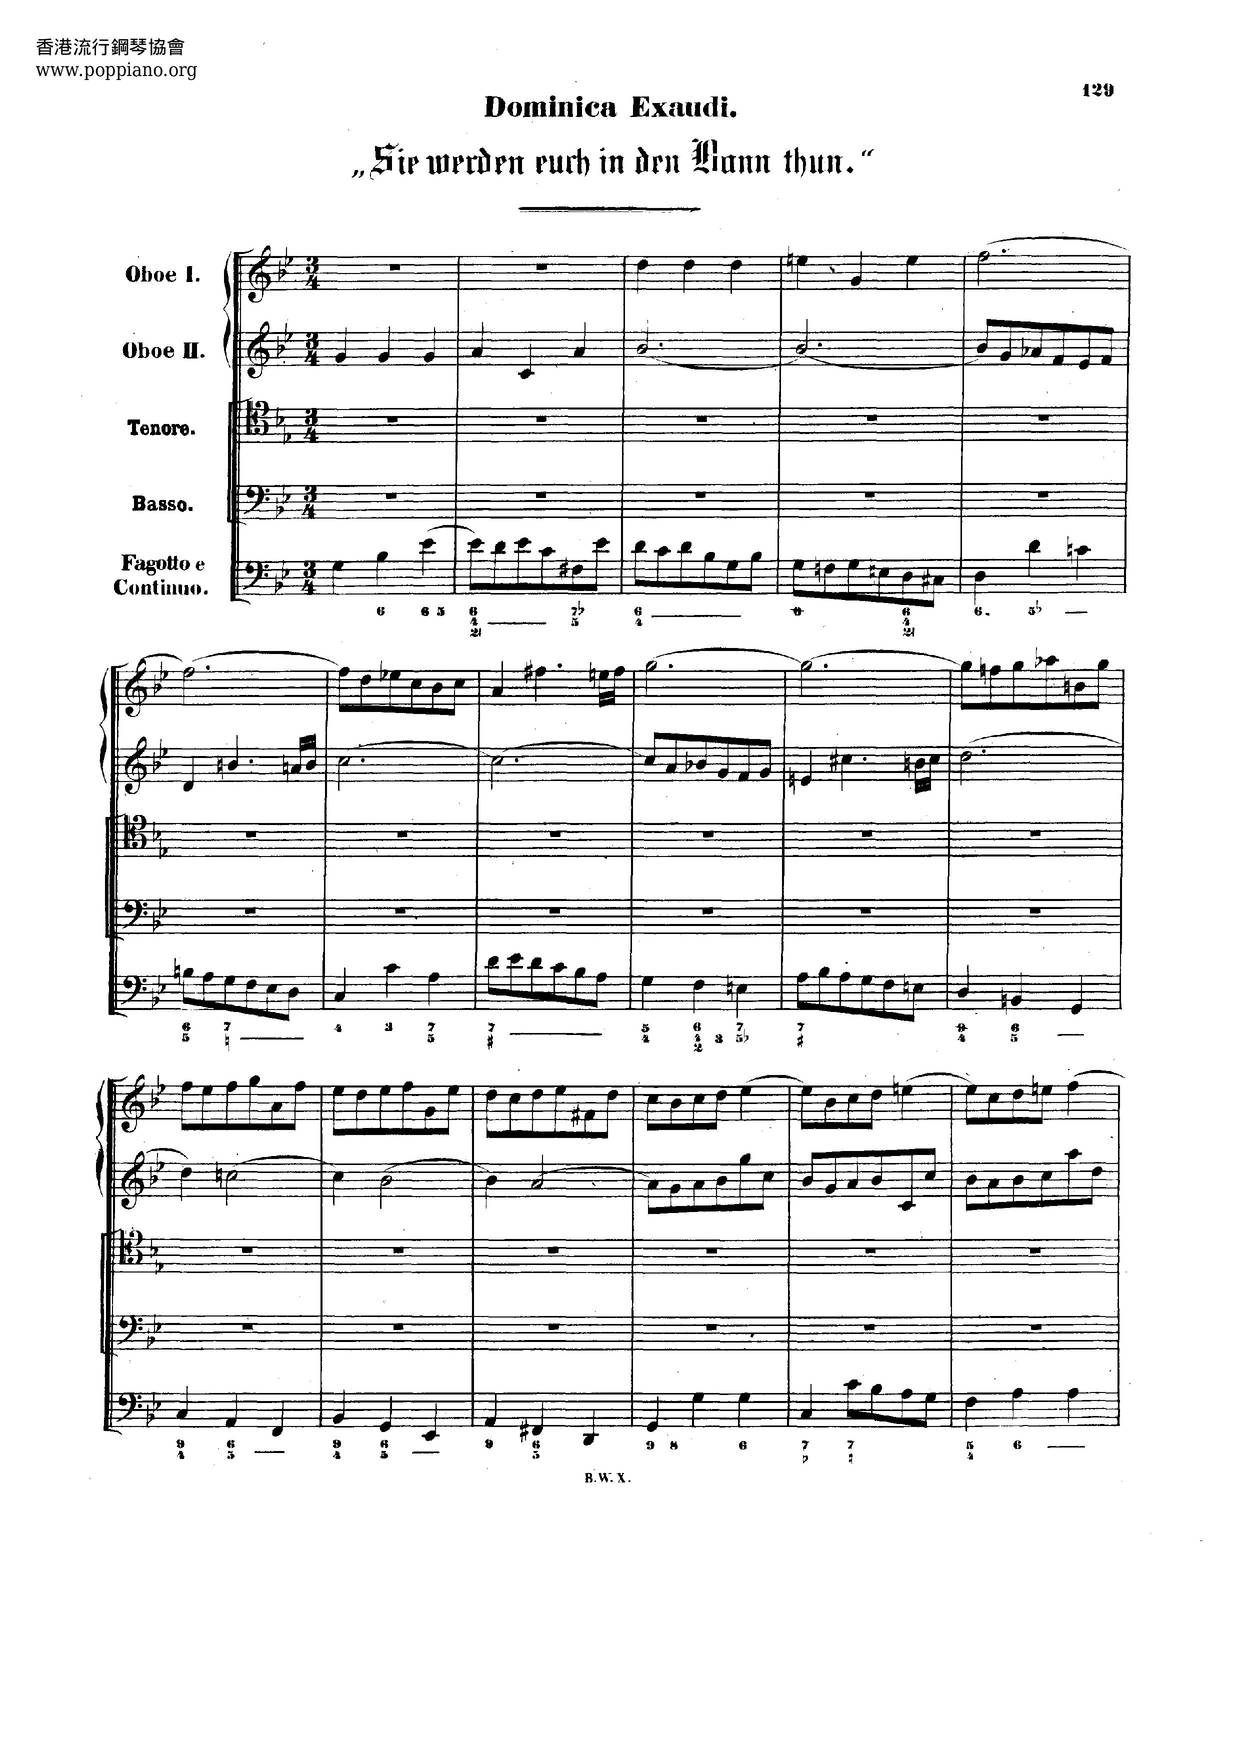 Sie Werden Euch In Den Bann Thun, BWV 44 Score